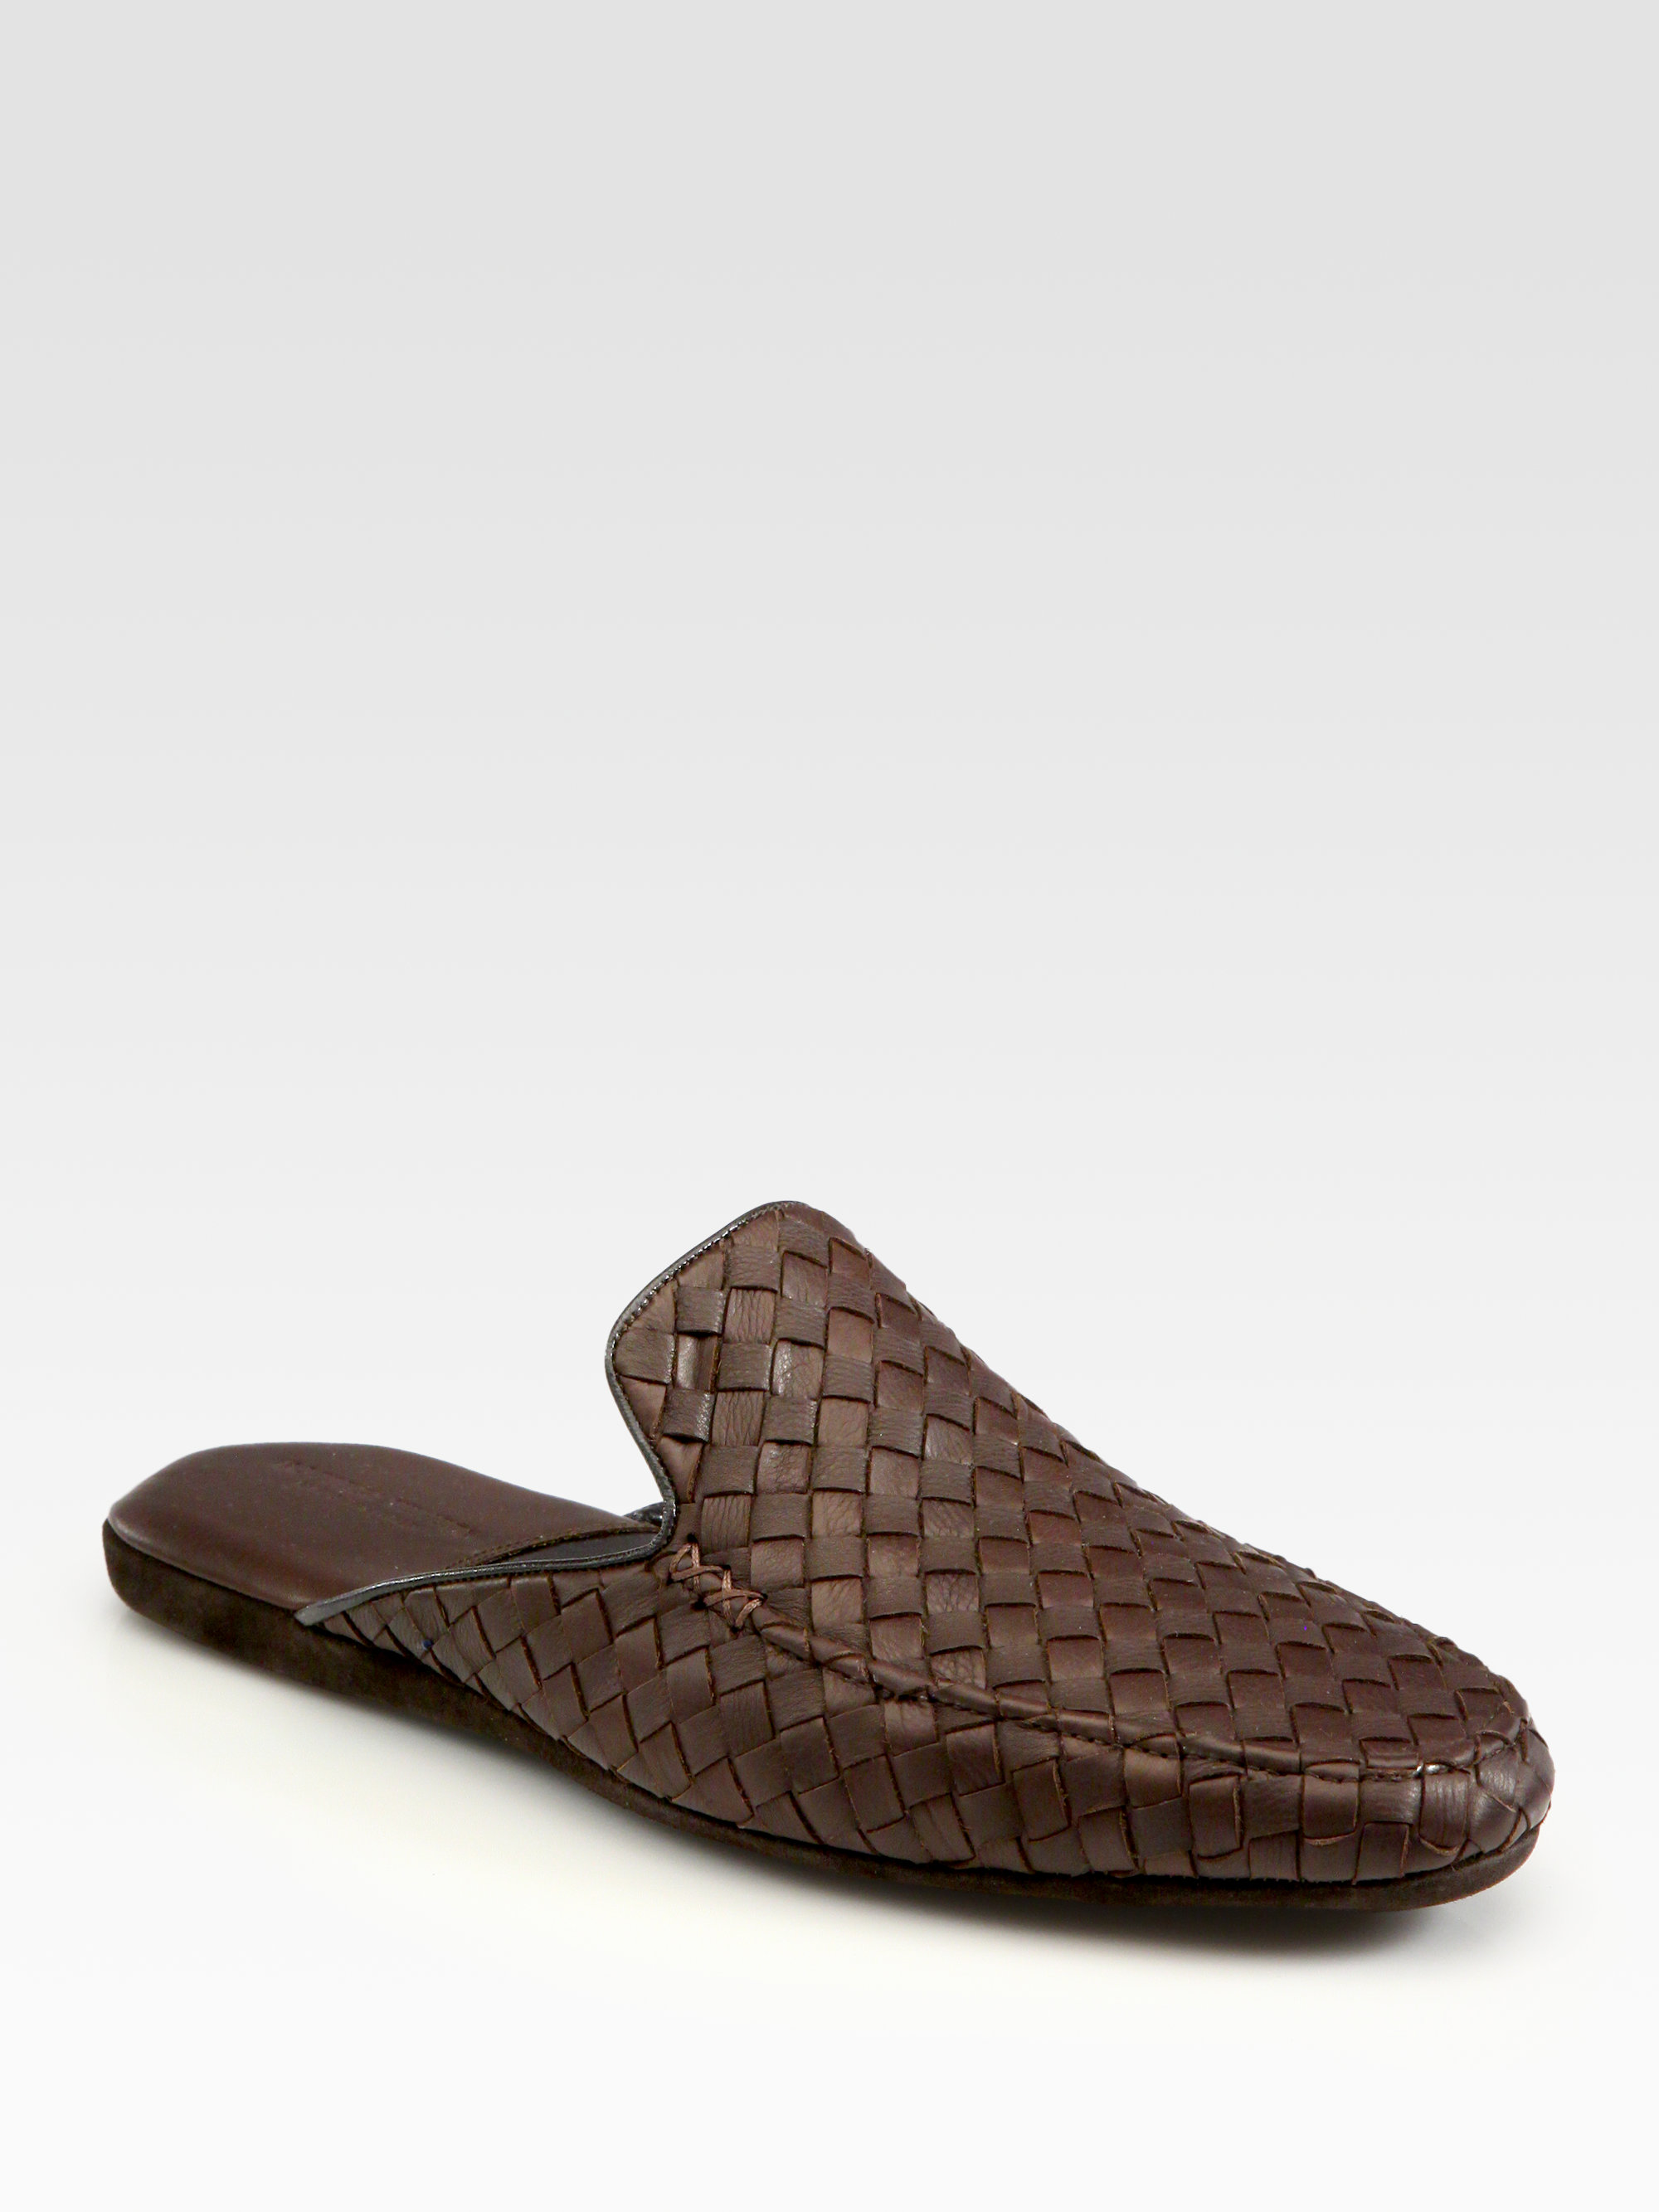 Bottega Veneta Leather Slippers in Brown for Men - Lyst